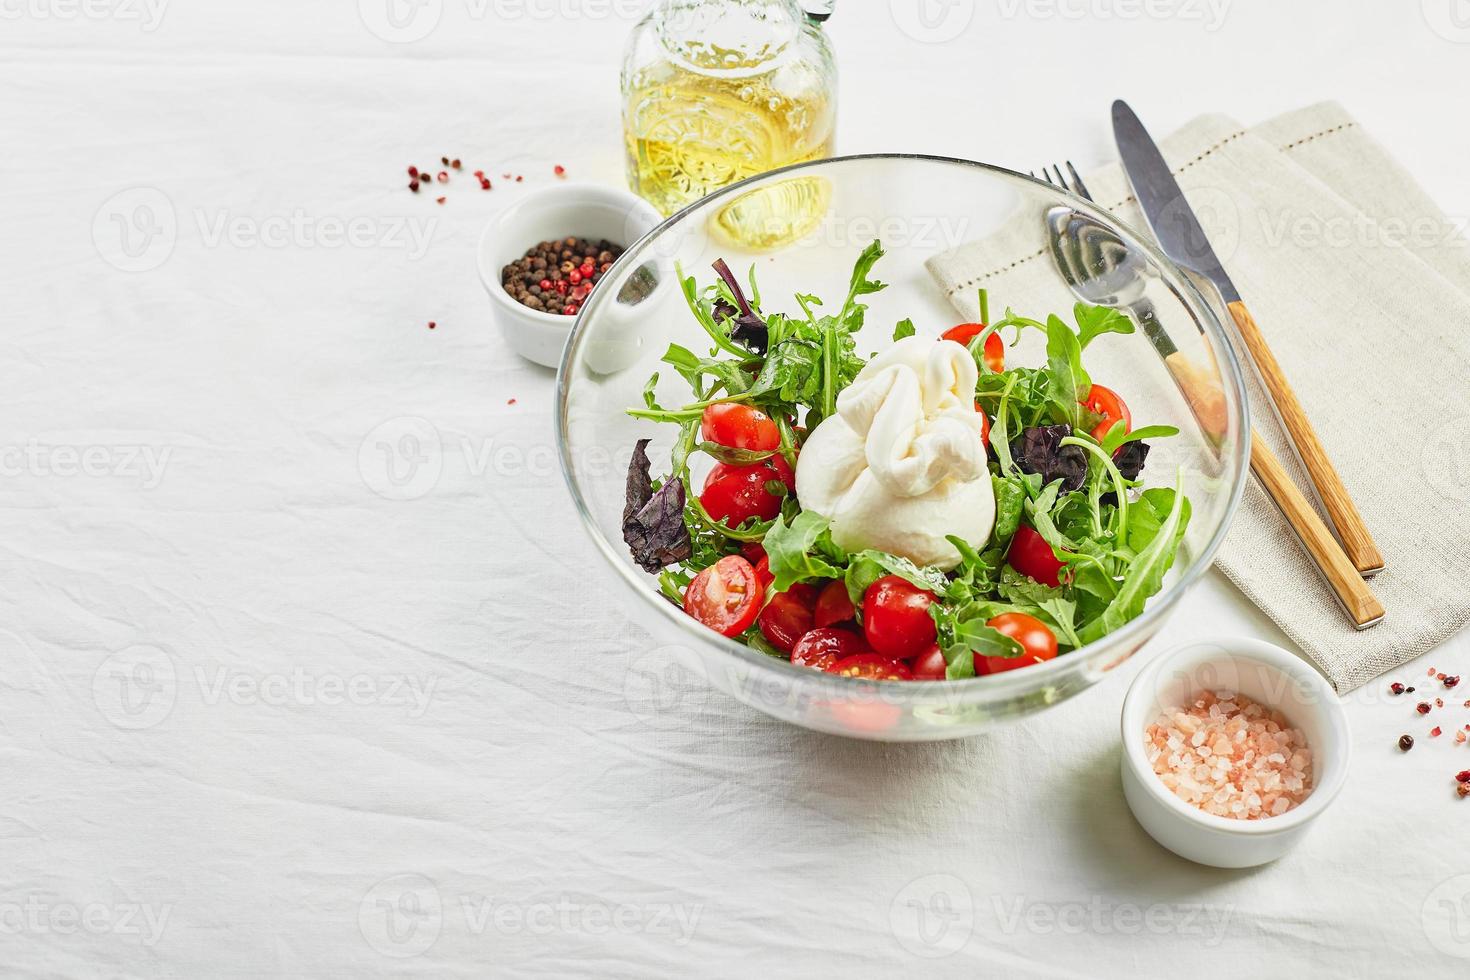 burrata, fromage frais italien à base de crème et de lait de bufflonne ou de vache, avec salade de tomates, roquette et basilic rouge photo